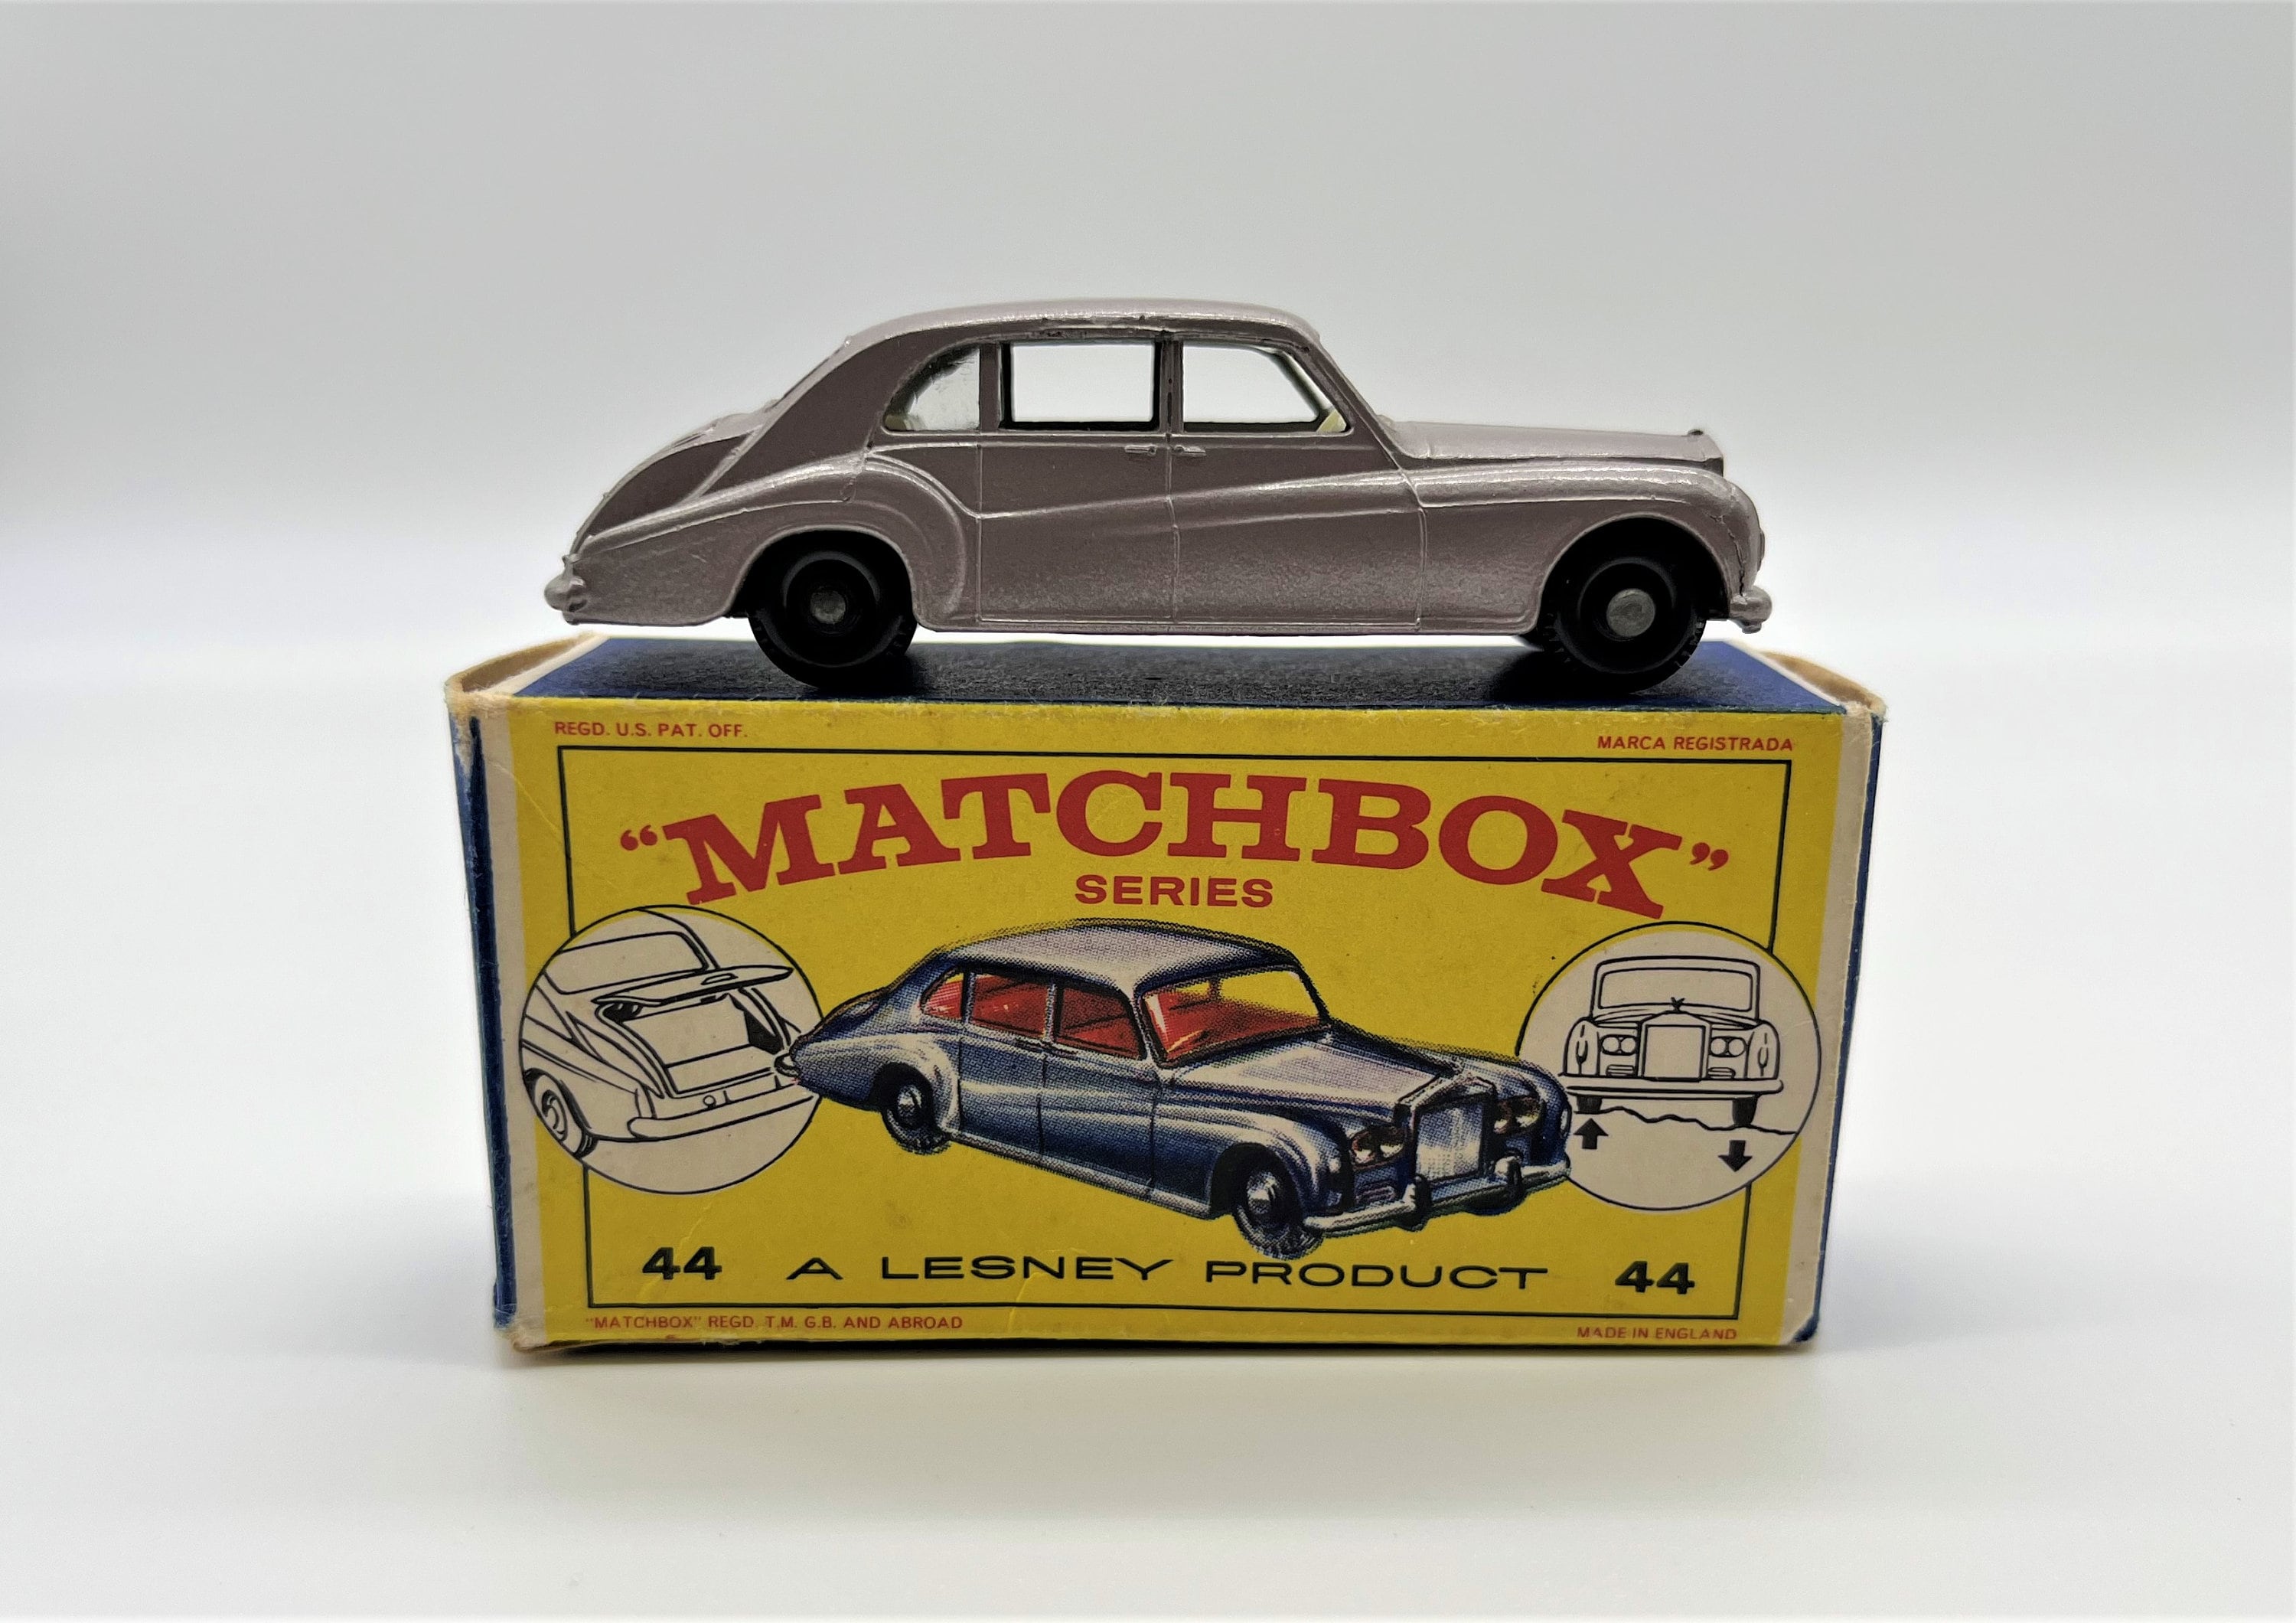 Matchbox Lesney No 44 Rolls Royce Phantom V Mint Condition - Etsy